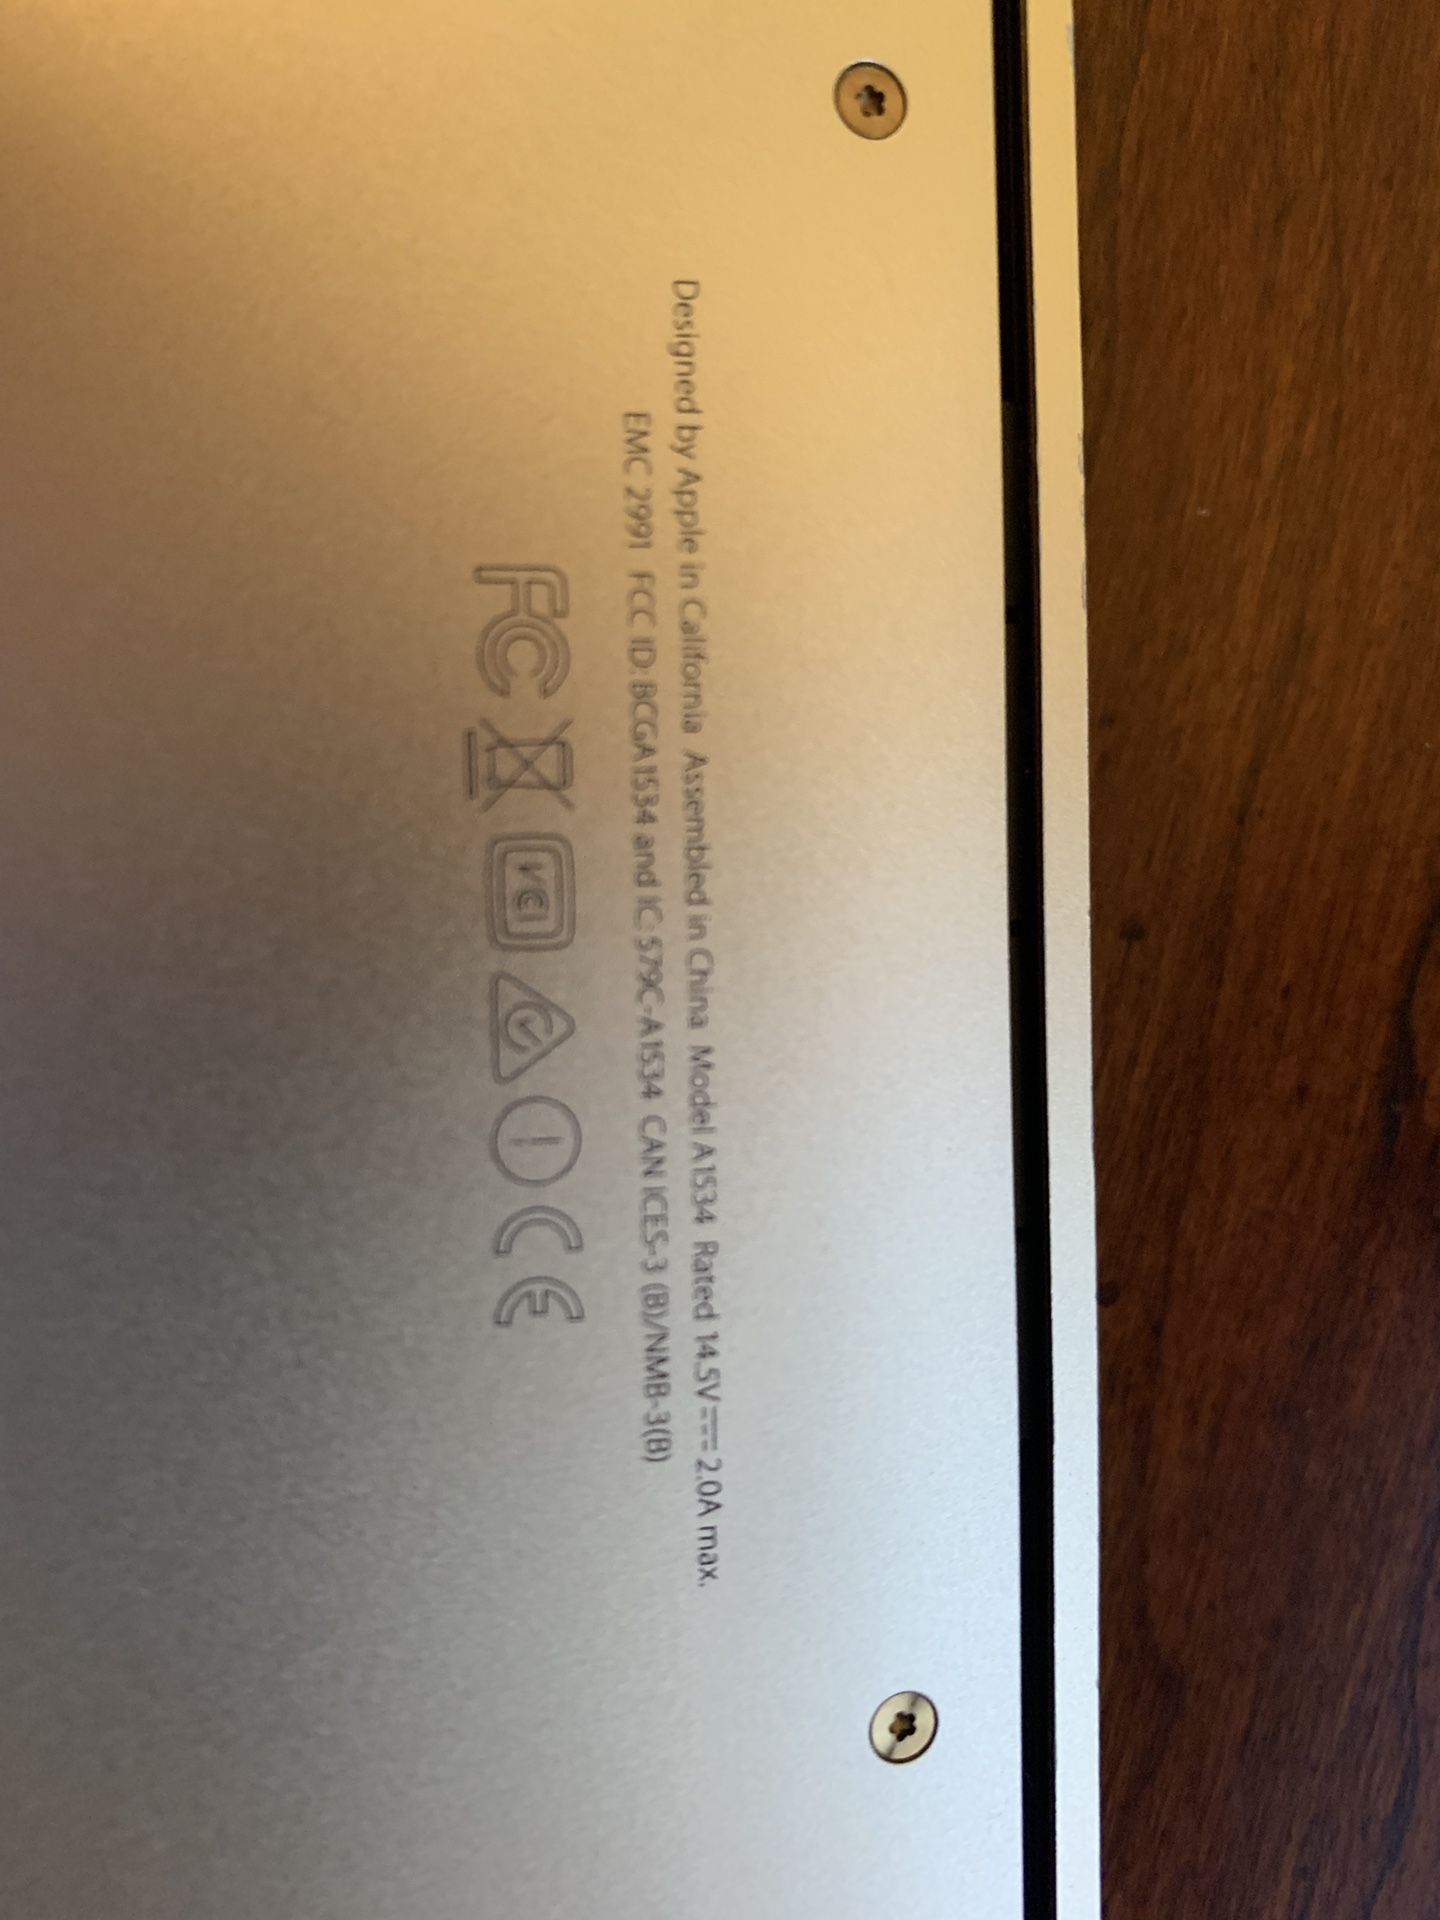 12” MacBook gold. Needs repair.